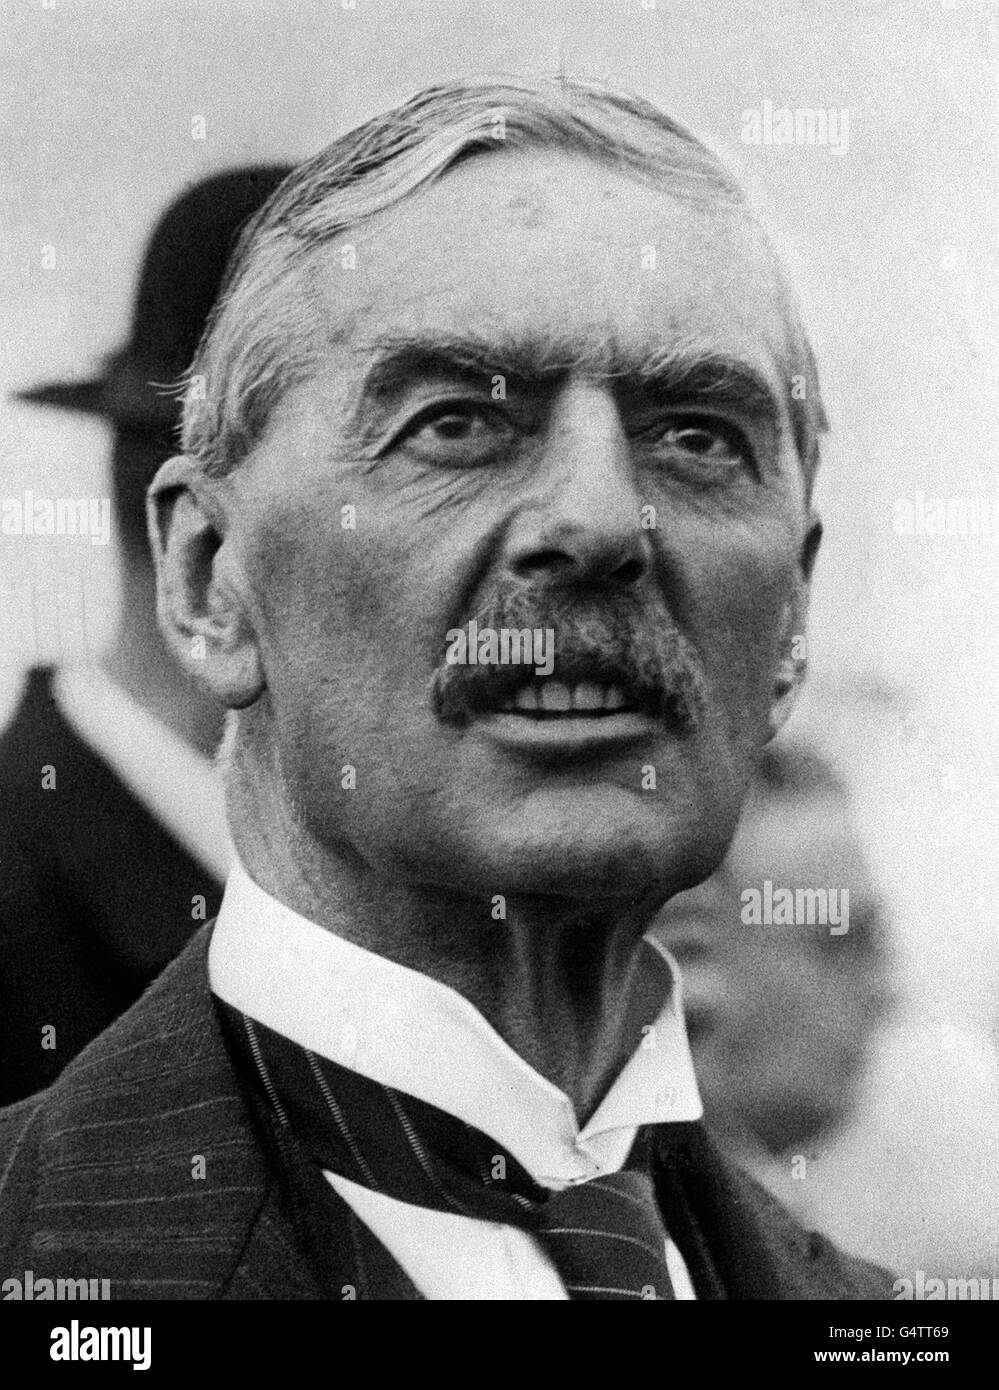 SETTEMBRE 1938: Neville Chamberlain (1869-1940), statista conservatore britannico e primo ministro (1937-1940) che ha perseguito una politica di appagamento verso la Germania nazista. Dopo l'invasione tedesca della Polonia dichiarò guerra il 3 settembre 1939. Foto Stock